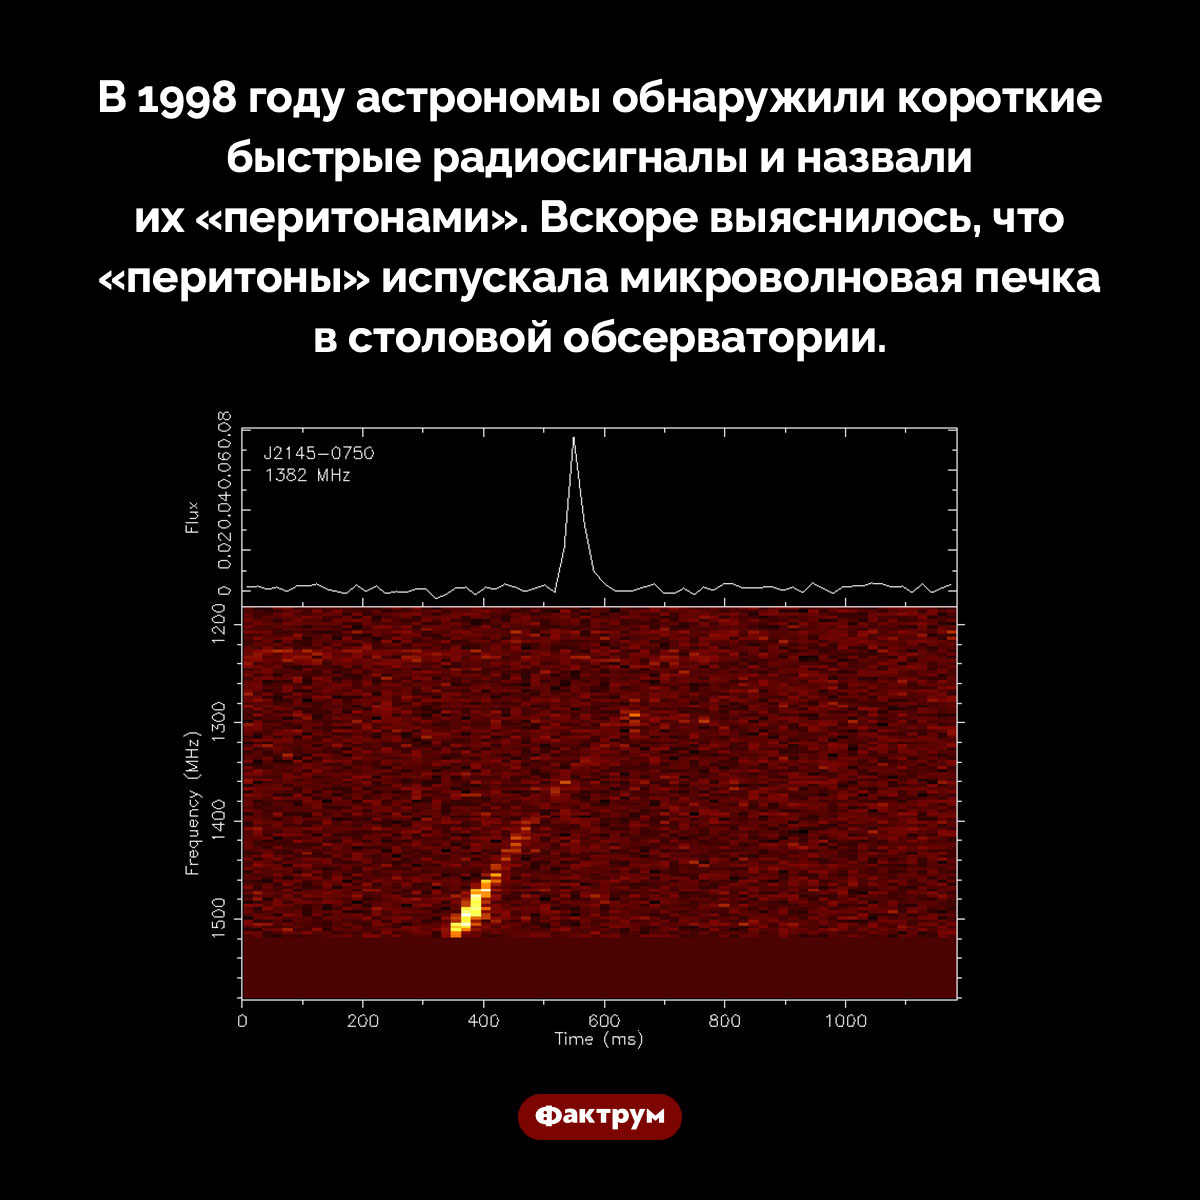 Что такое «перитоны». В 1998 году астрономы обнаружили короткие быстрые радиосигналы и назвали их «перитонами». Вскоре выяснилось, что «перитоны» испускала микроволновая печка в столовой обсерватории.